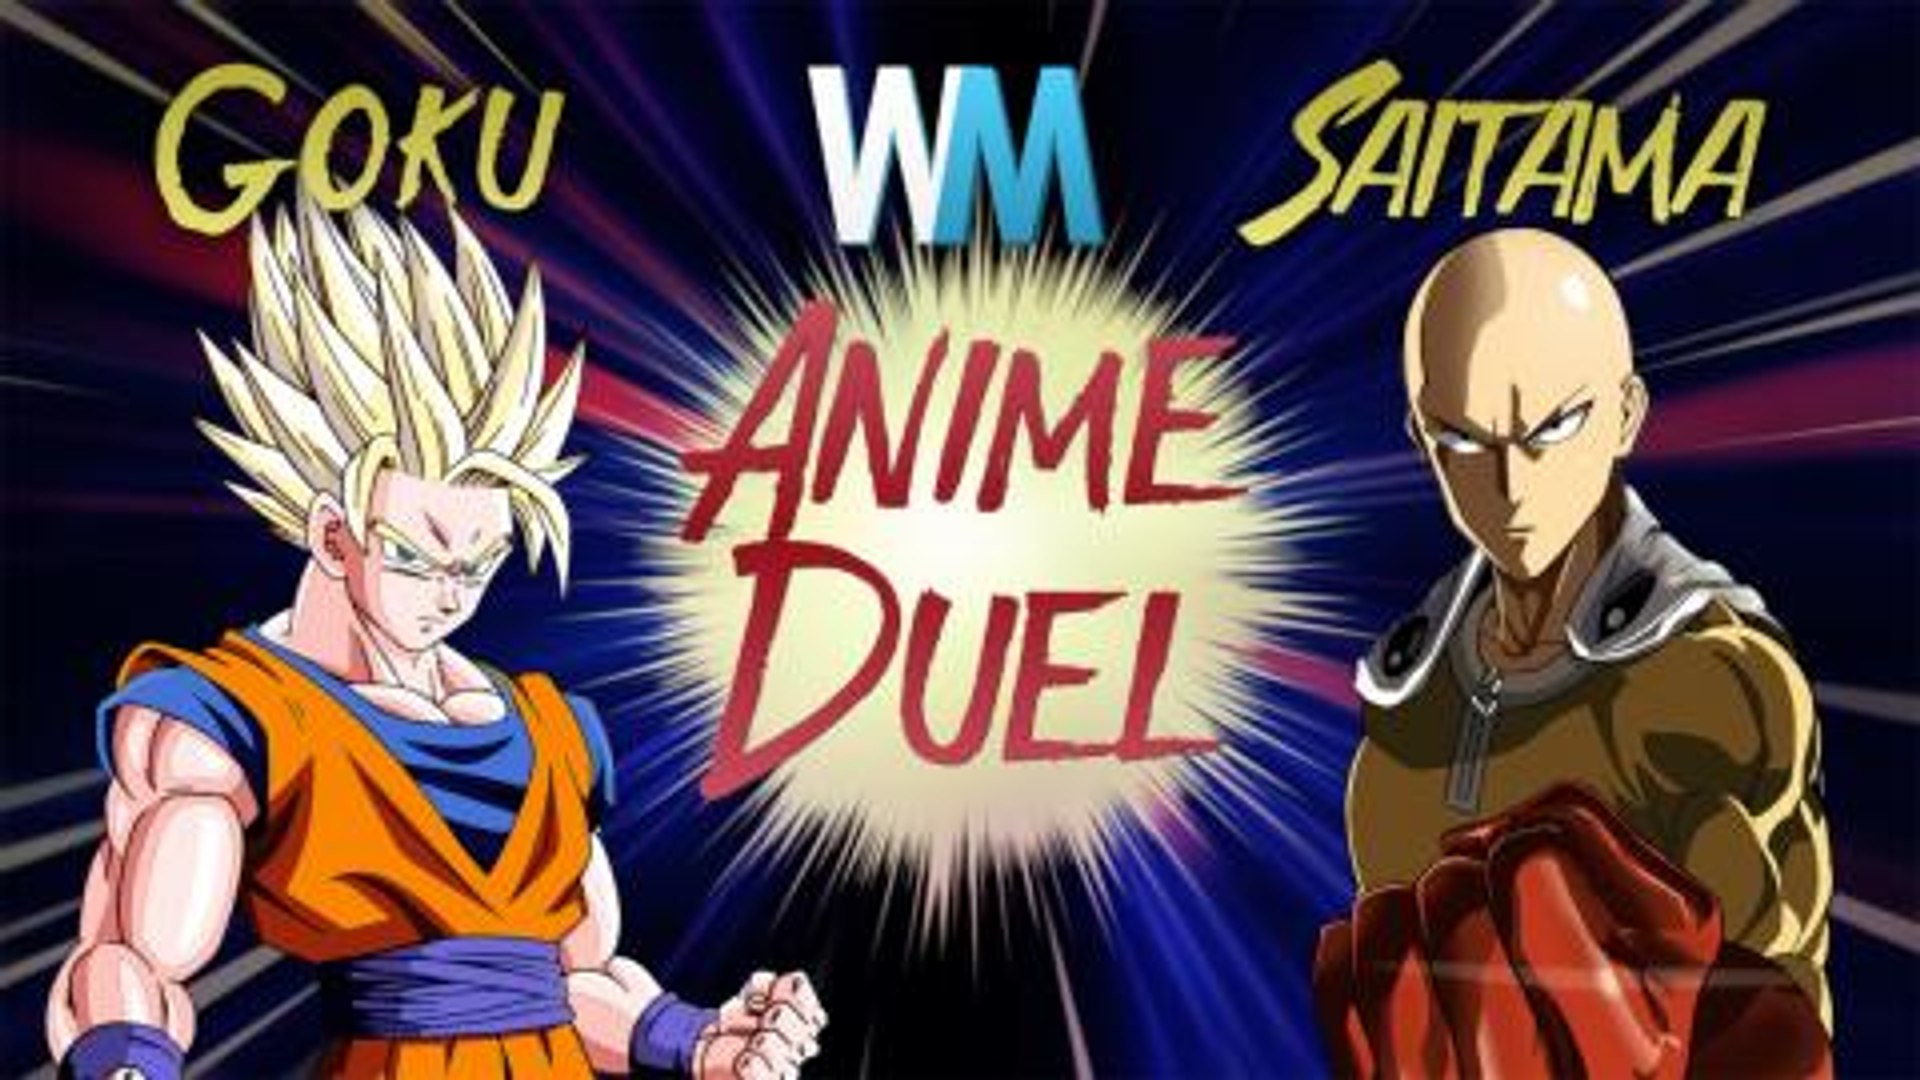 Anime Duel: Goku Vs Saitama